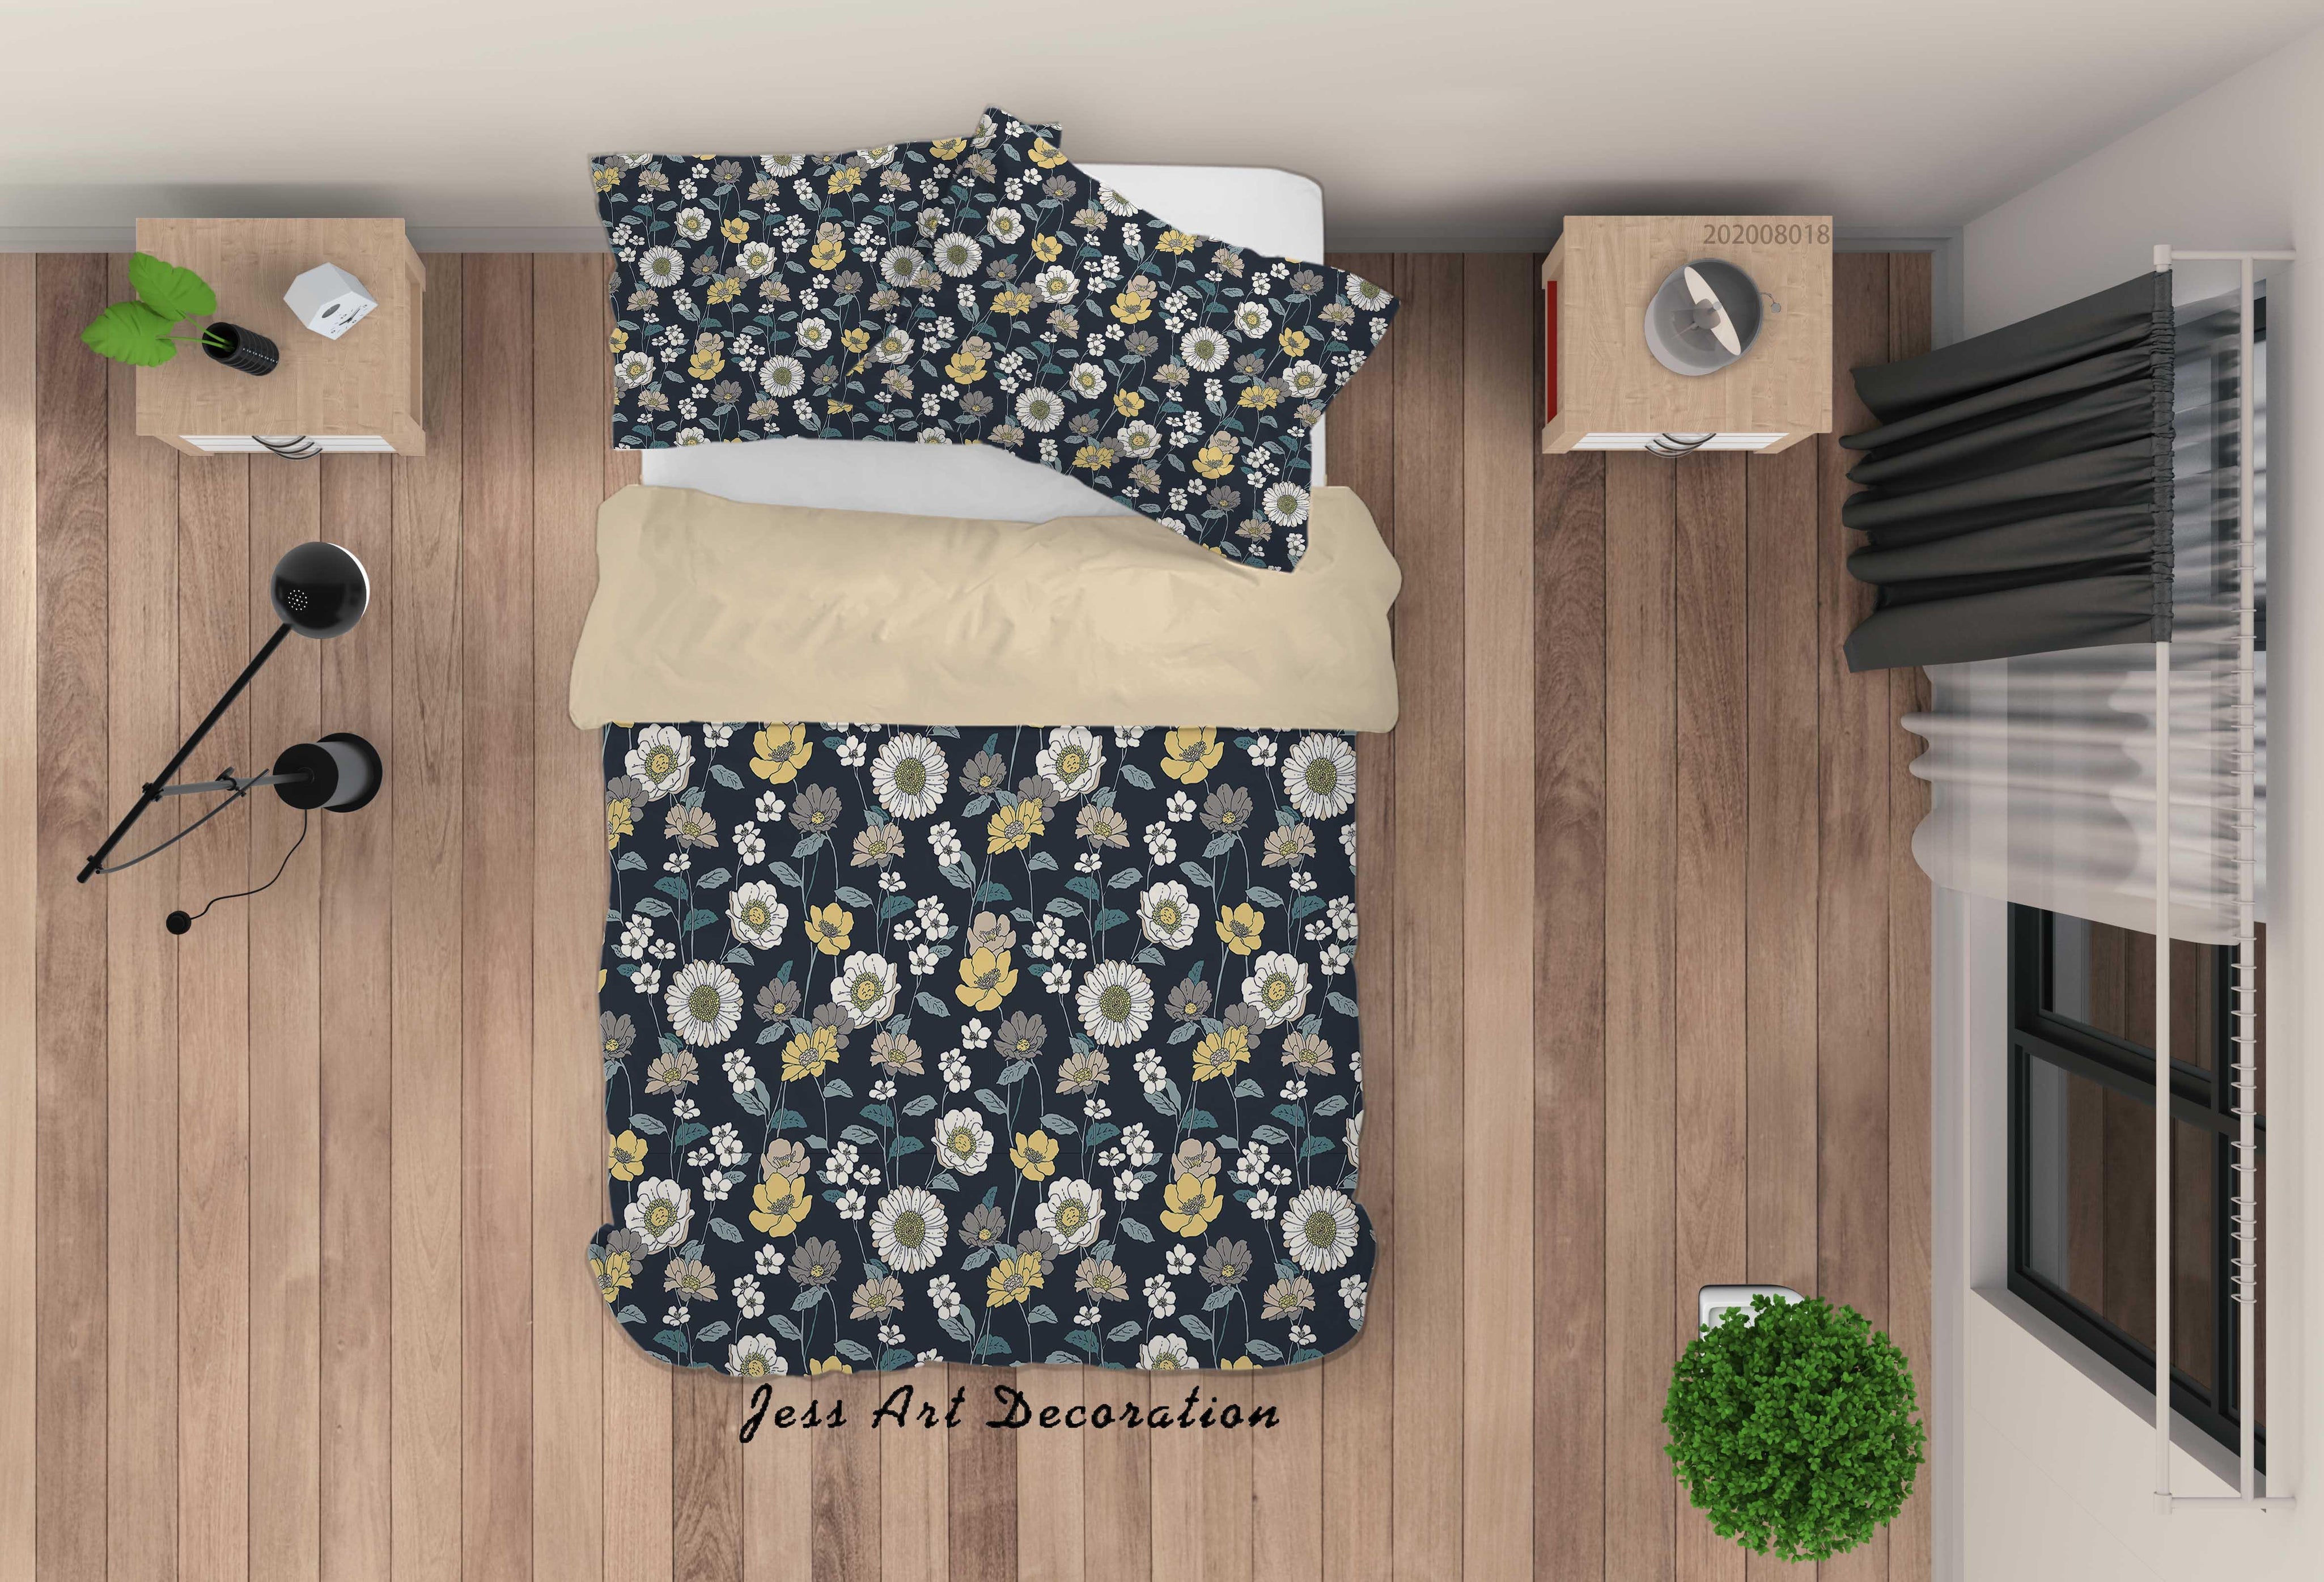 3D Vintage Plant Floral Quilt Cover Set Bedding Set Duvet Cover Pillowcases LXL- Jess Art Decoration